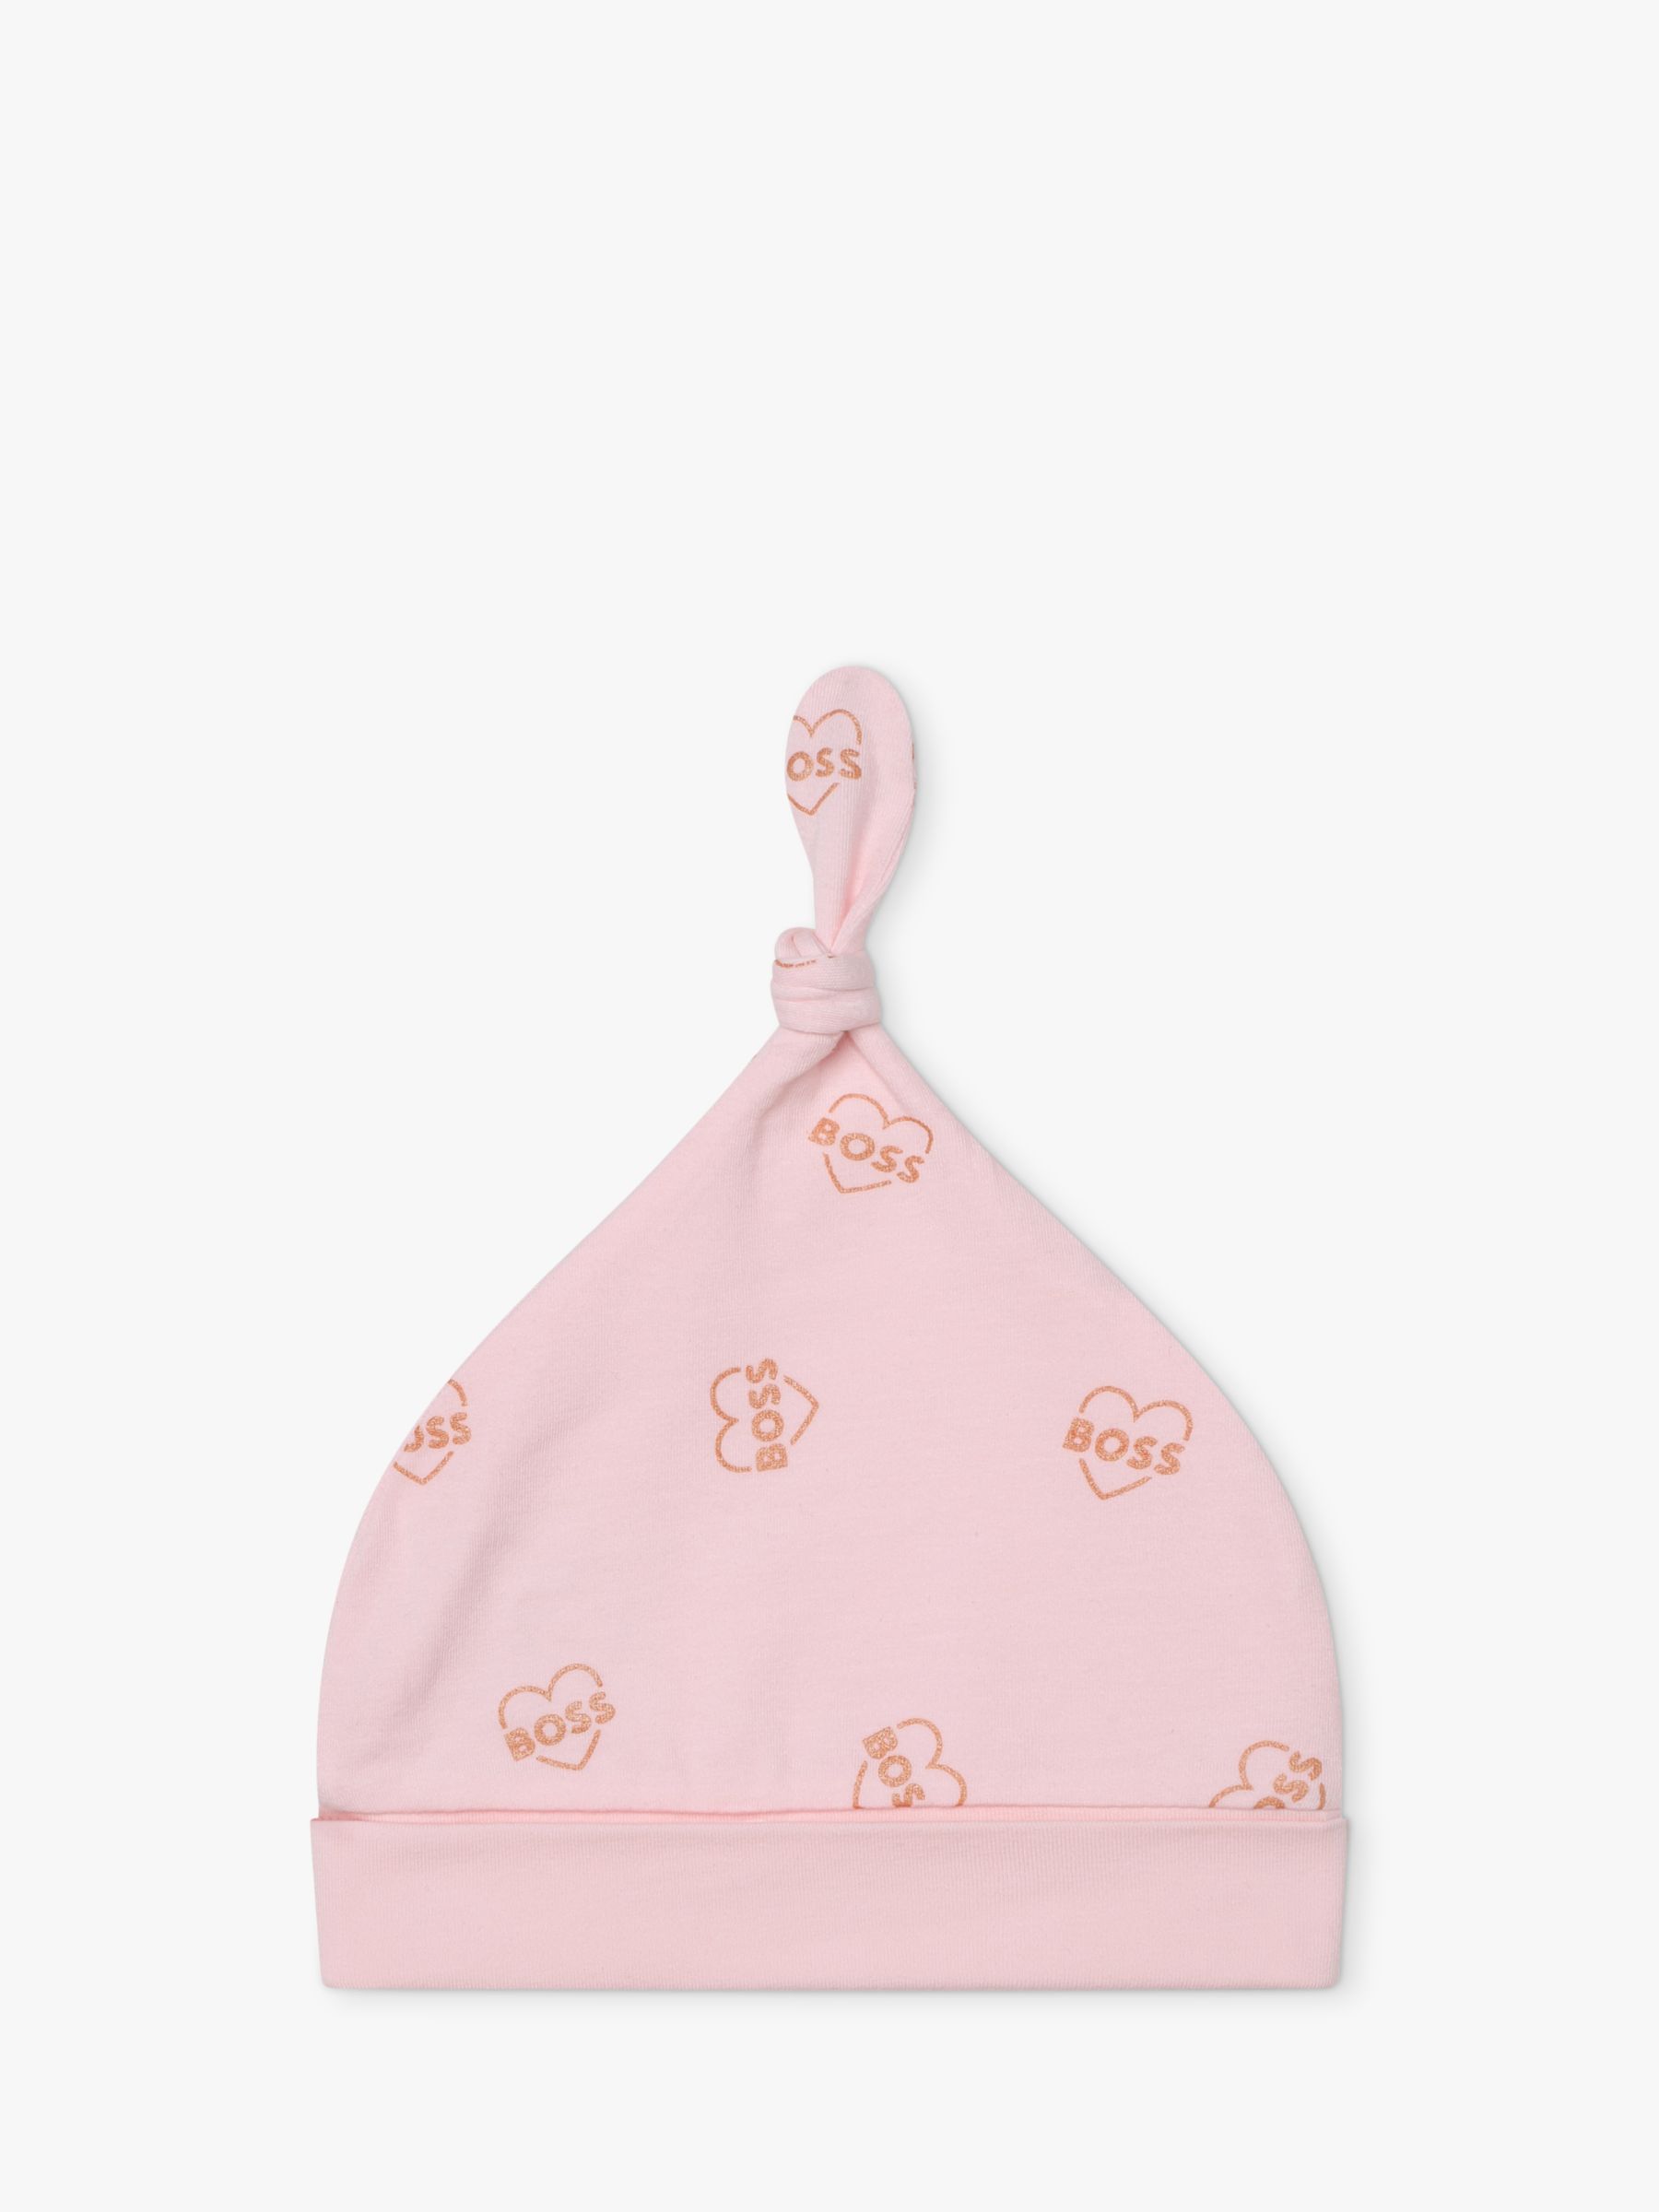 BOSS Baby Logo Heart Sleepsuit & Hat Set, Light Pink, 9 months